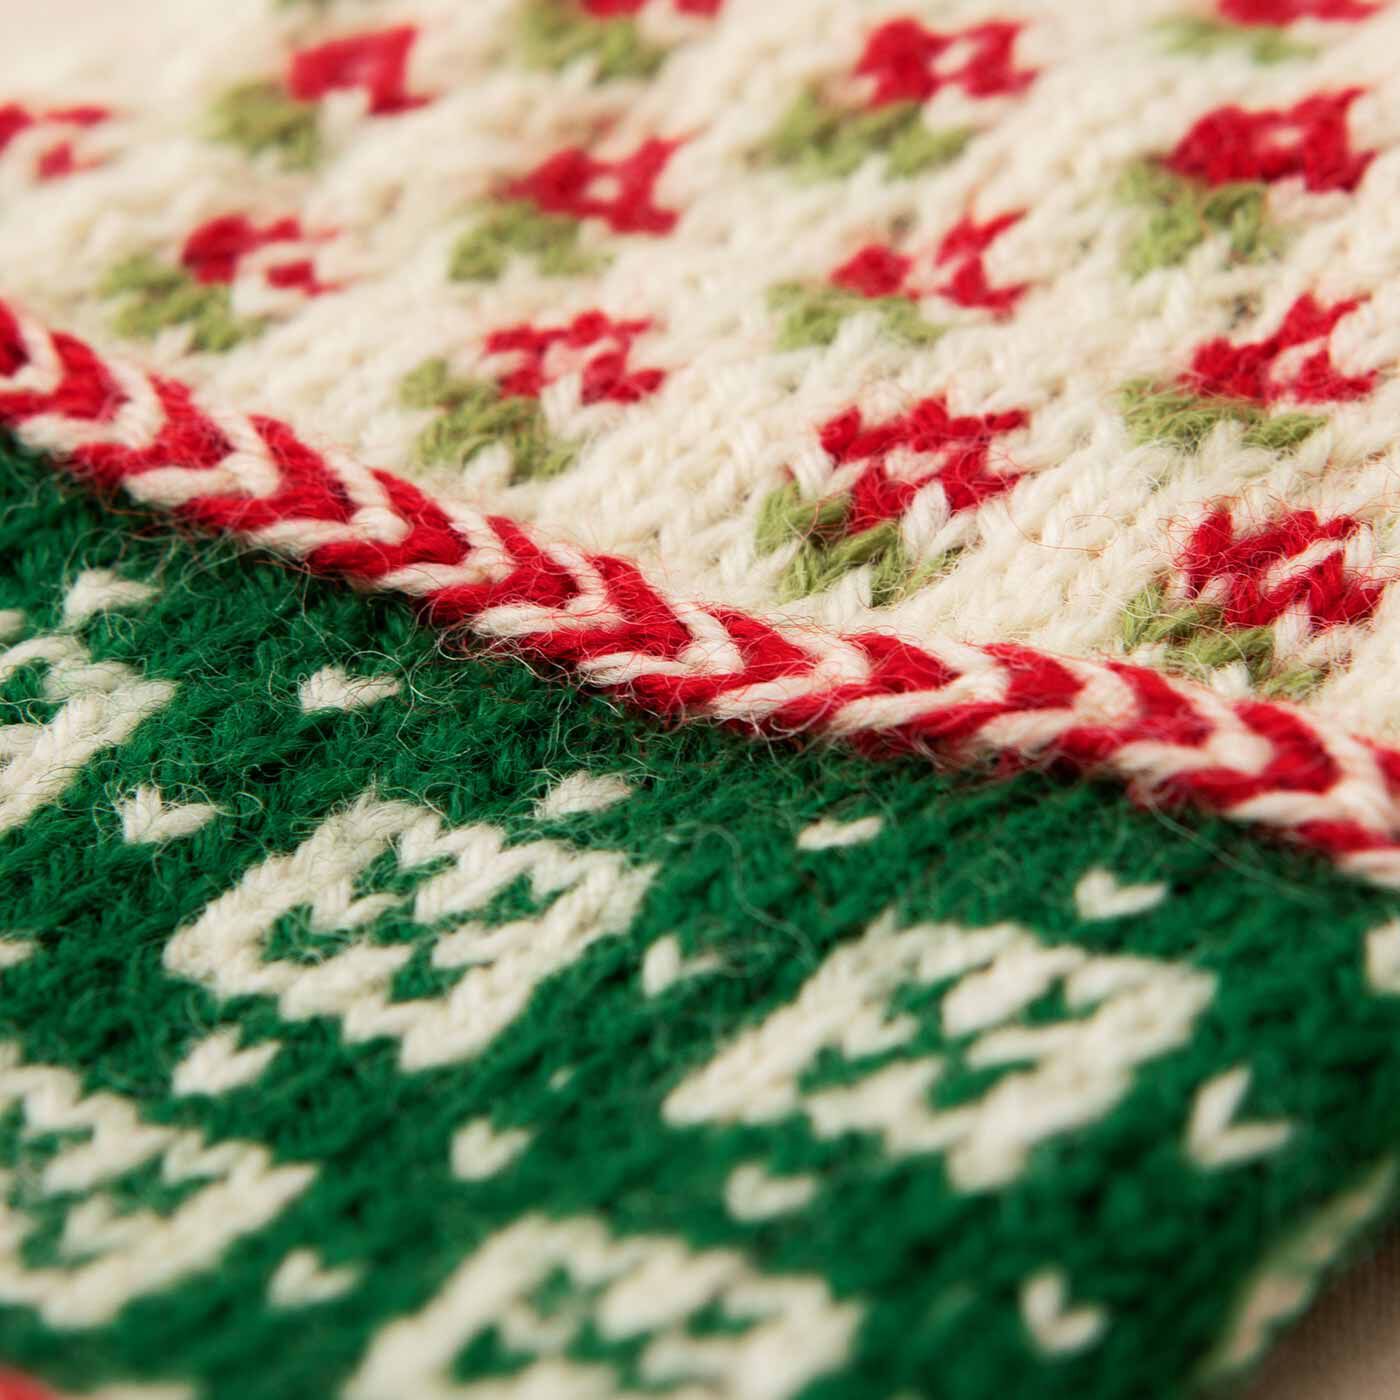 クチュリエ|ラトビアにあこがれて 編み込み模様がかわいい 三角あたまのミトンの会|手首のアクセントとなるぽこっとねじれた編み目は、“キヒノヴィッツ”と呼ばれる伝統技法。エストニアの小さな島“キヒヌ”が由来で、バルト三国のミトンによく見られます。